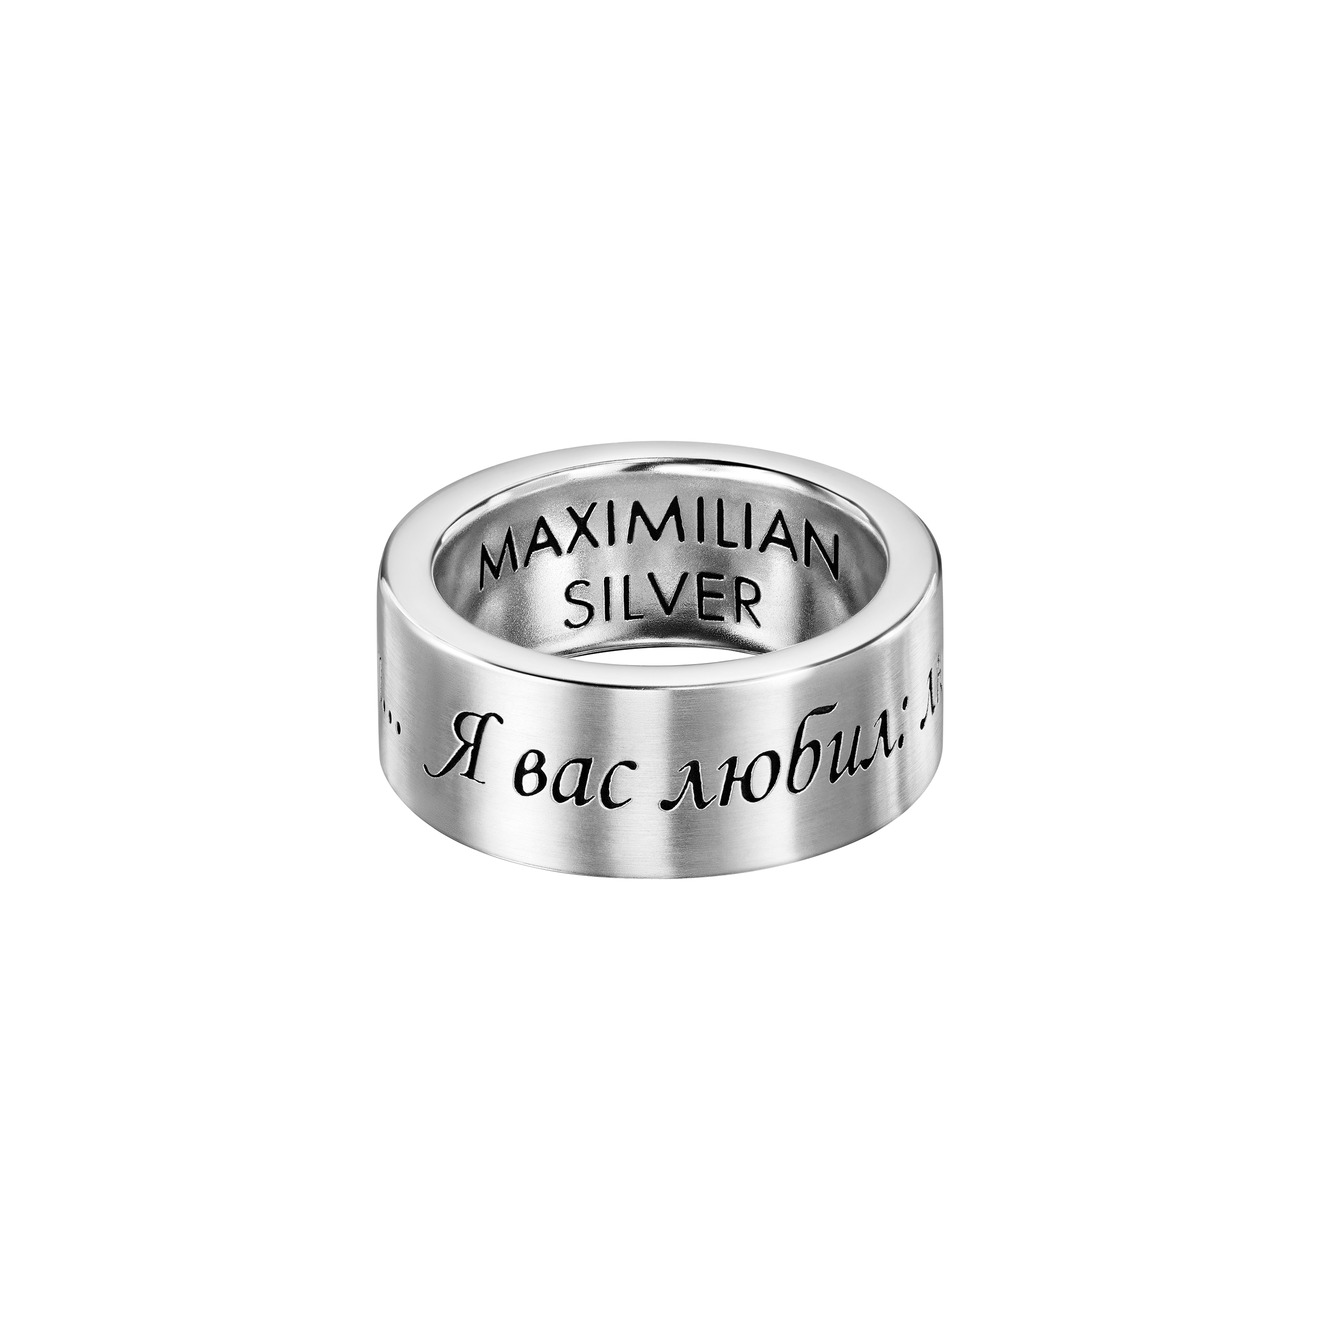 Maximilian Silver Label Кольцо из серебра с гравировкой Я вас любил maximilian silver label кольцо сердце из серебра червовый валет позолоченное матовое